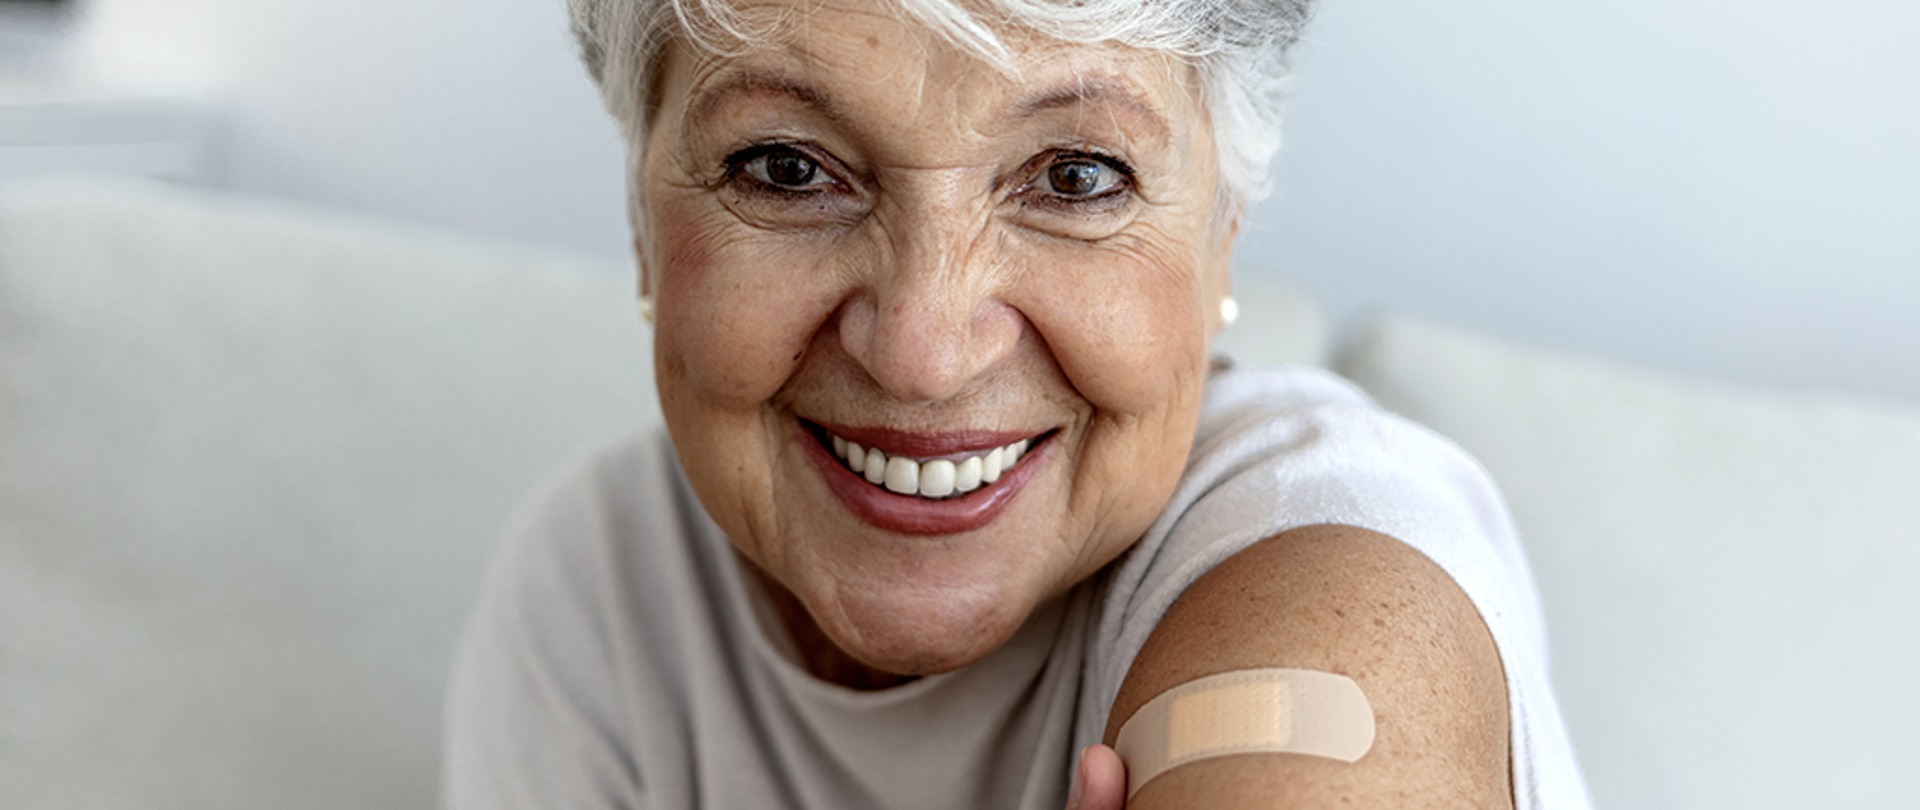 Na zdjęciu widoczna jest ok. 60-letnia kobieta. Jest uśmiechnięta, patrzy wprost na odbiorcę. Na jej ramieniu widoczny jest plaster, który został przyklejony tuż po zaczepieniu przeciw COVID-19.